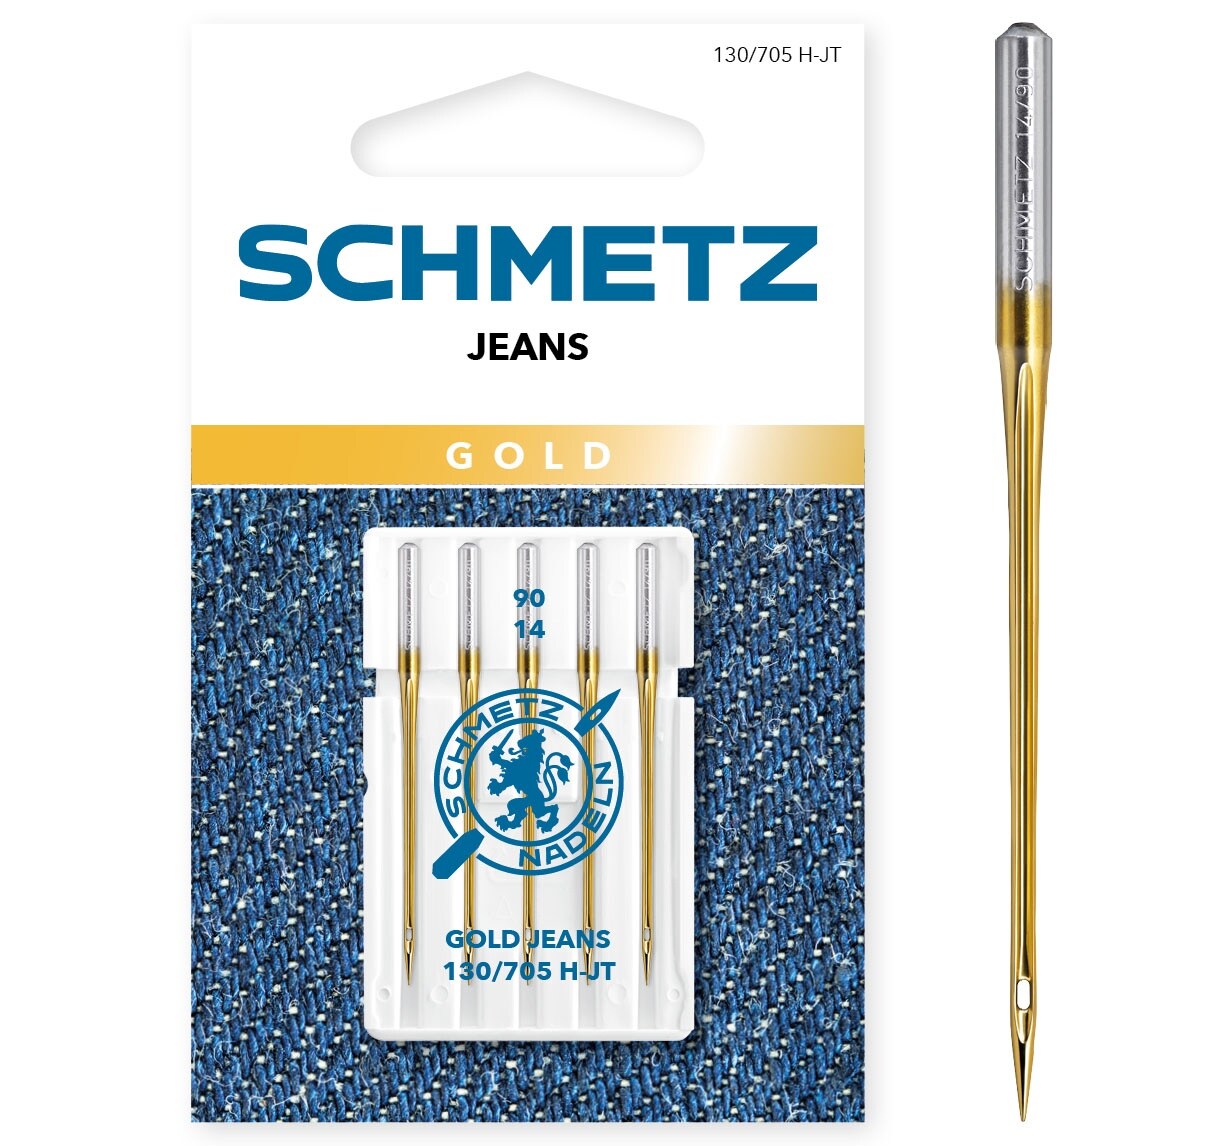 Schmetz Jeans/Denim Gold Machine Needles-Size 90/14 5/Pkg